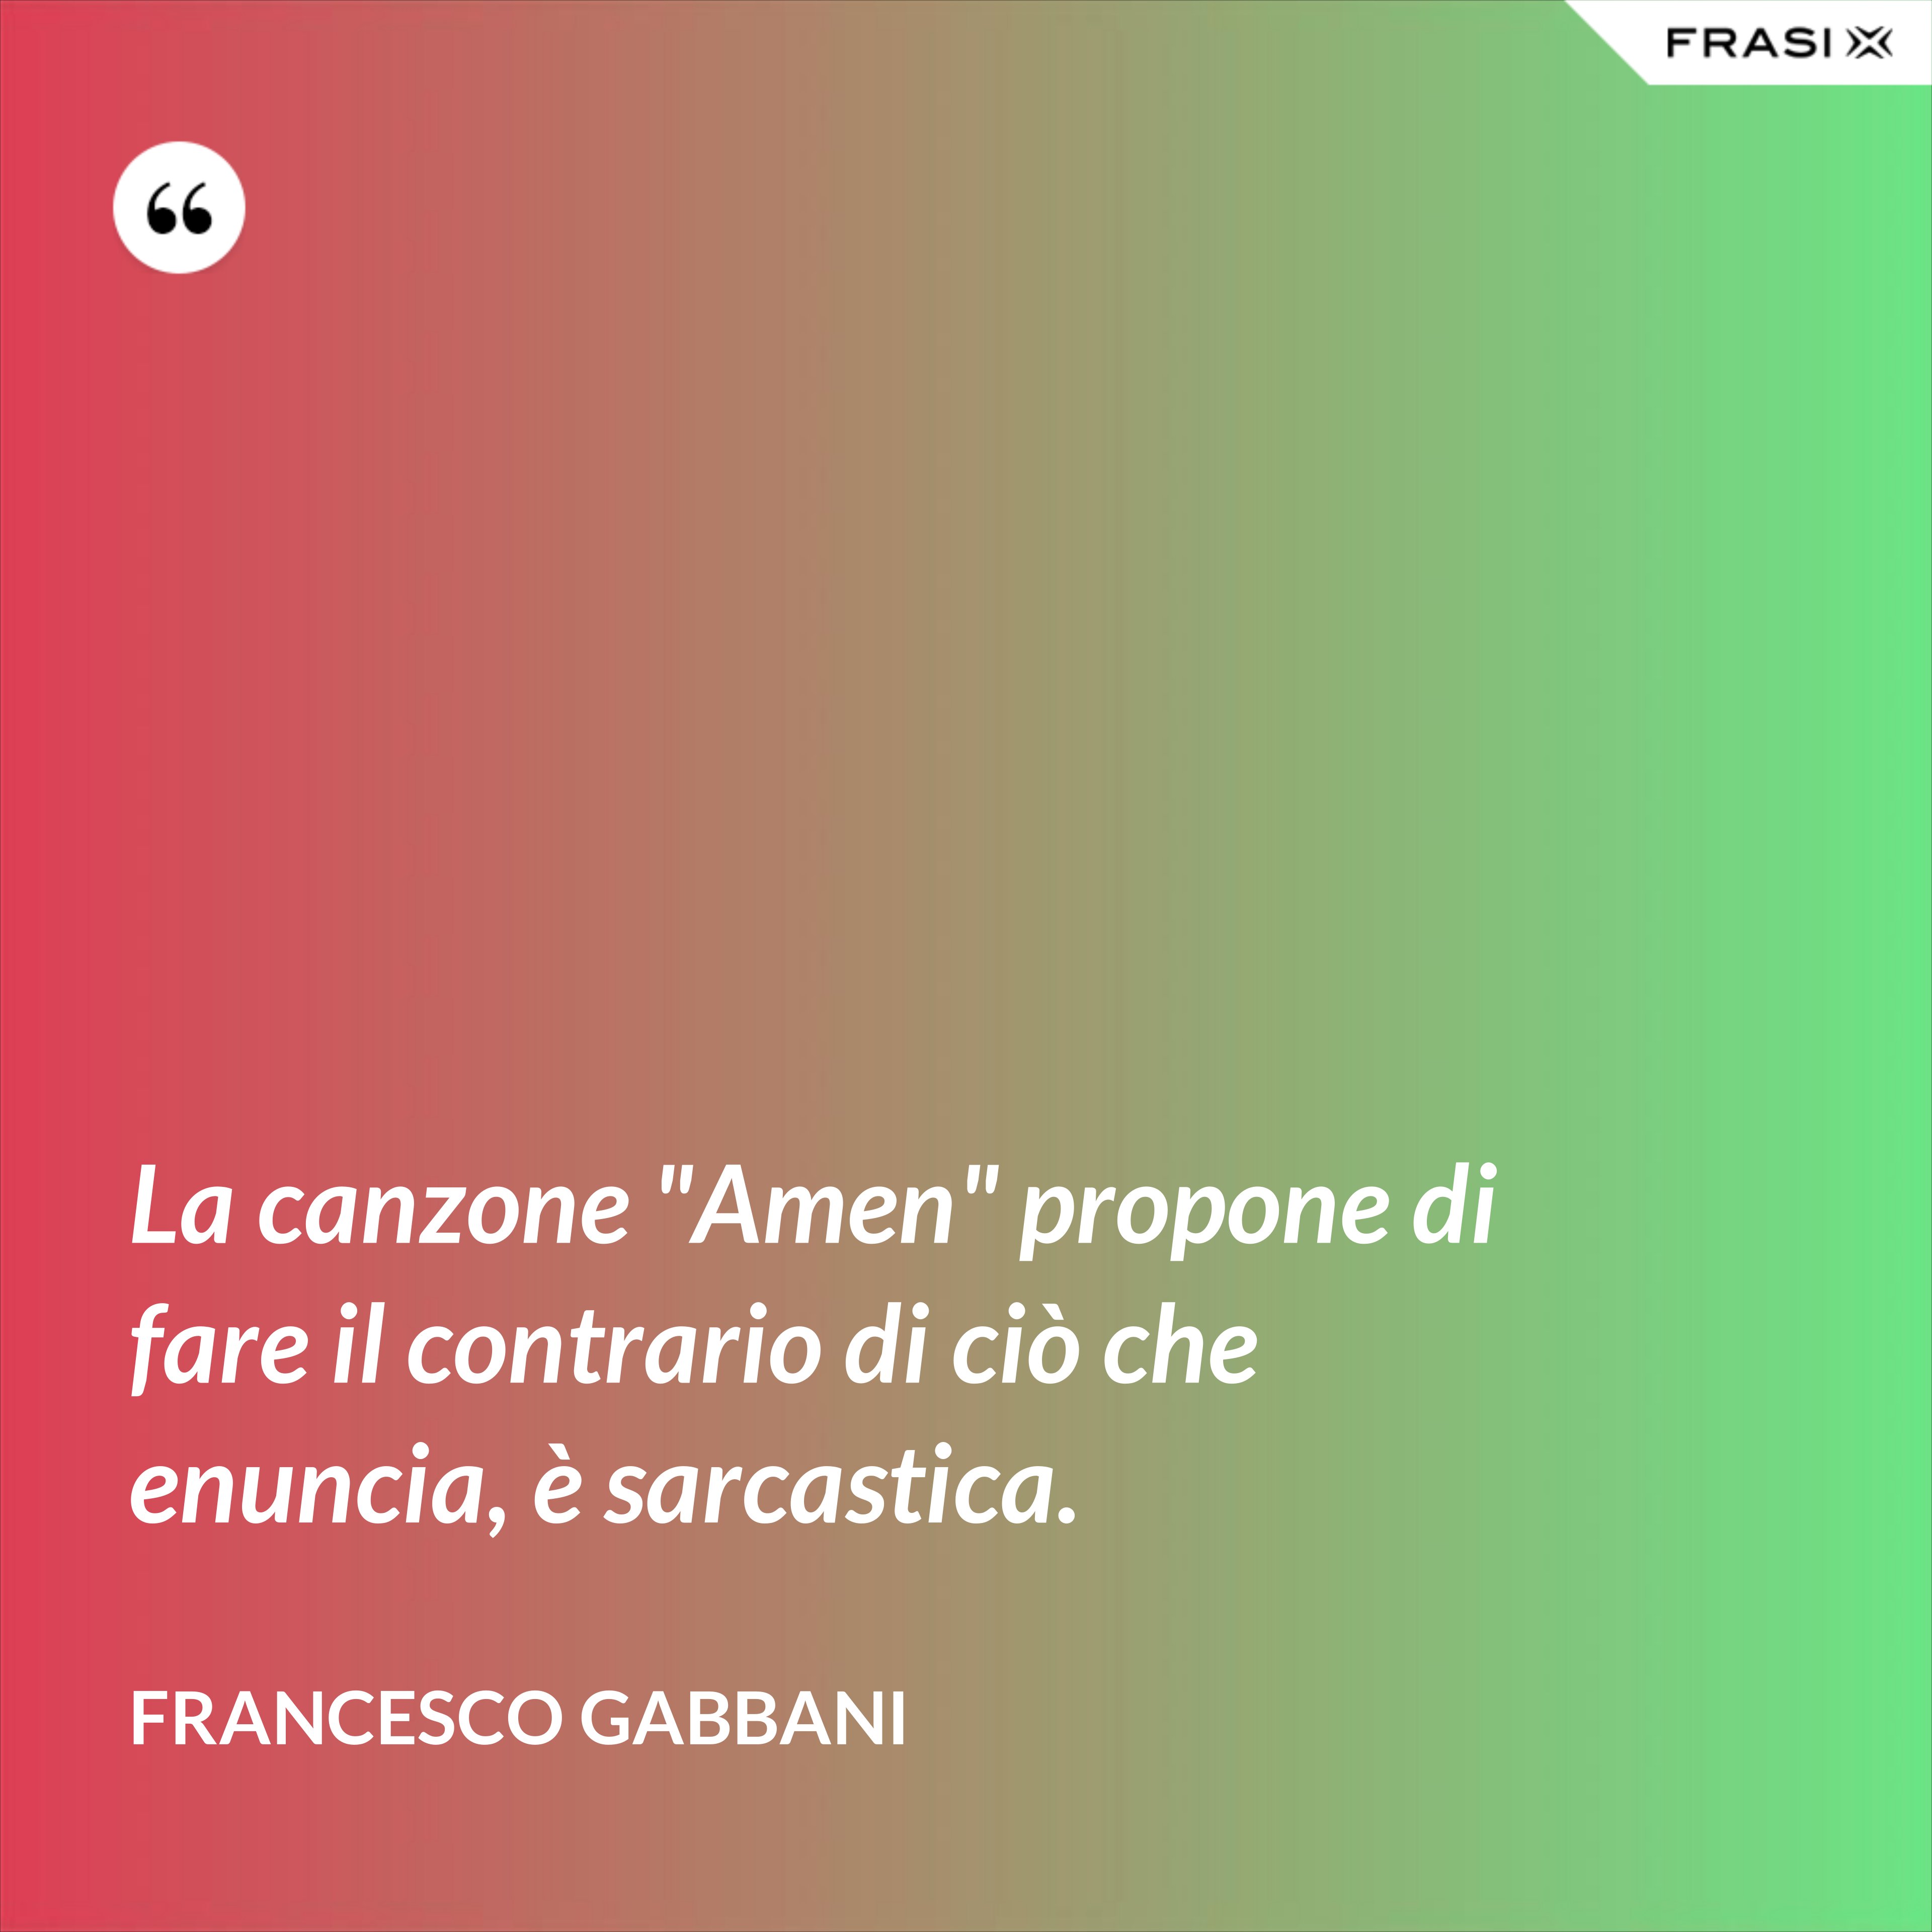 La canzone "Amen" propone di fare il contrario di ciò che enuncia, è sarcastica. - Francesco Gabbani